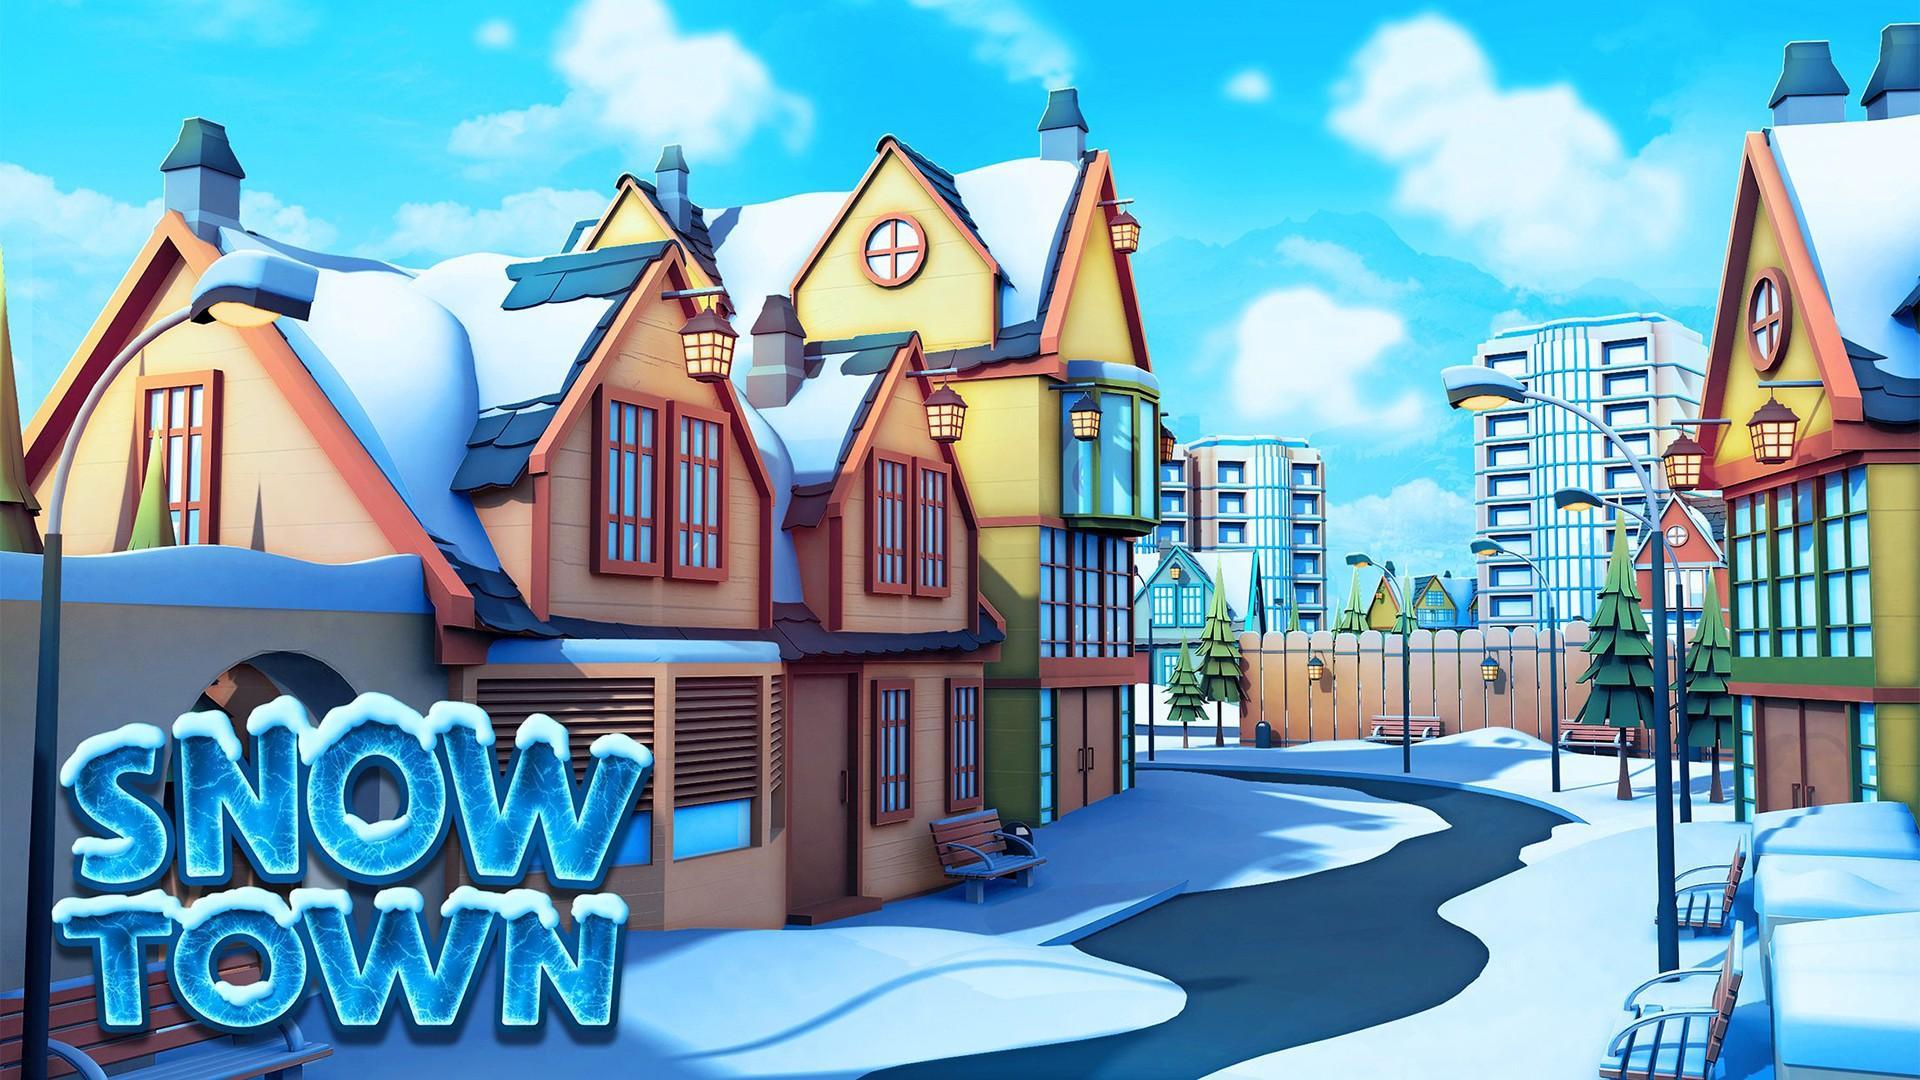 Screenshot 1 of เมืองหิมะ - เมืองหมู่บ้านน้ำแข็ง 1.5.1